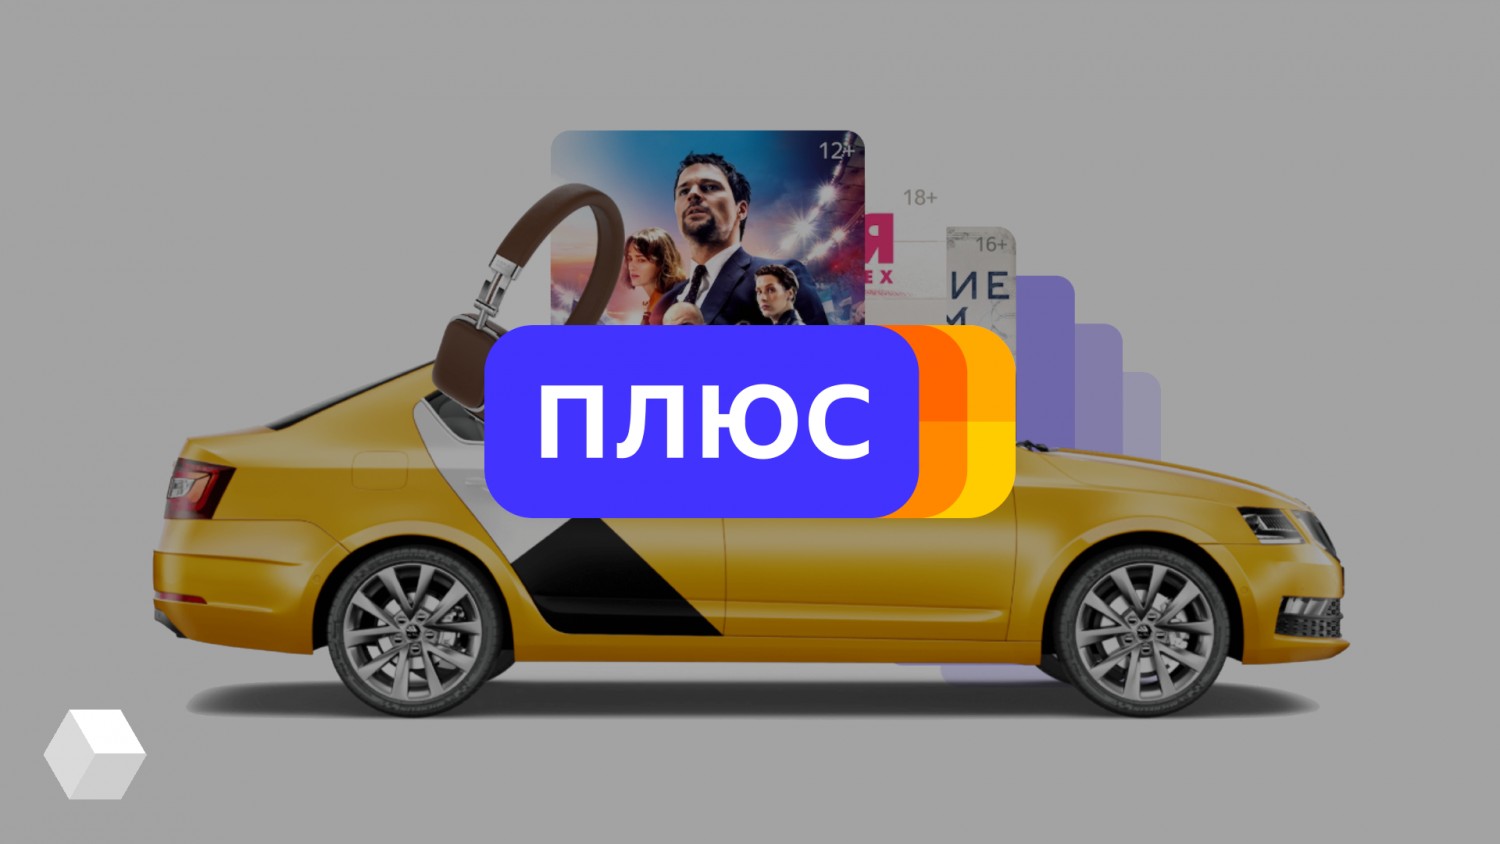 Подписчики «Яндекс.Плюс» получат спецпредложения к «Чёрной пятнице»